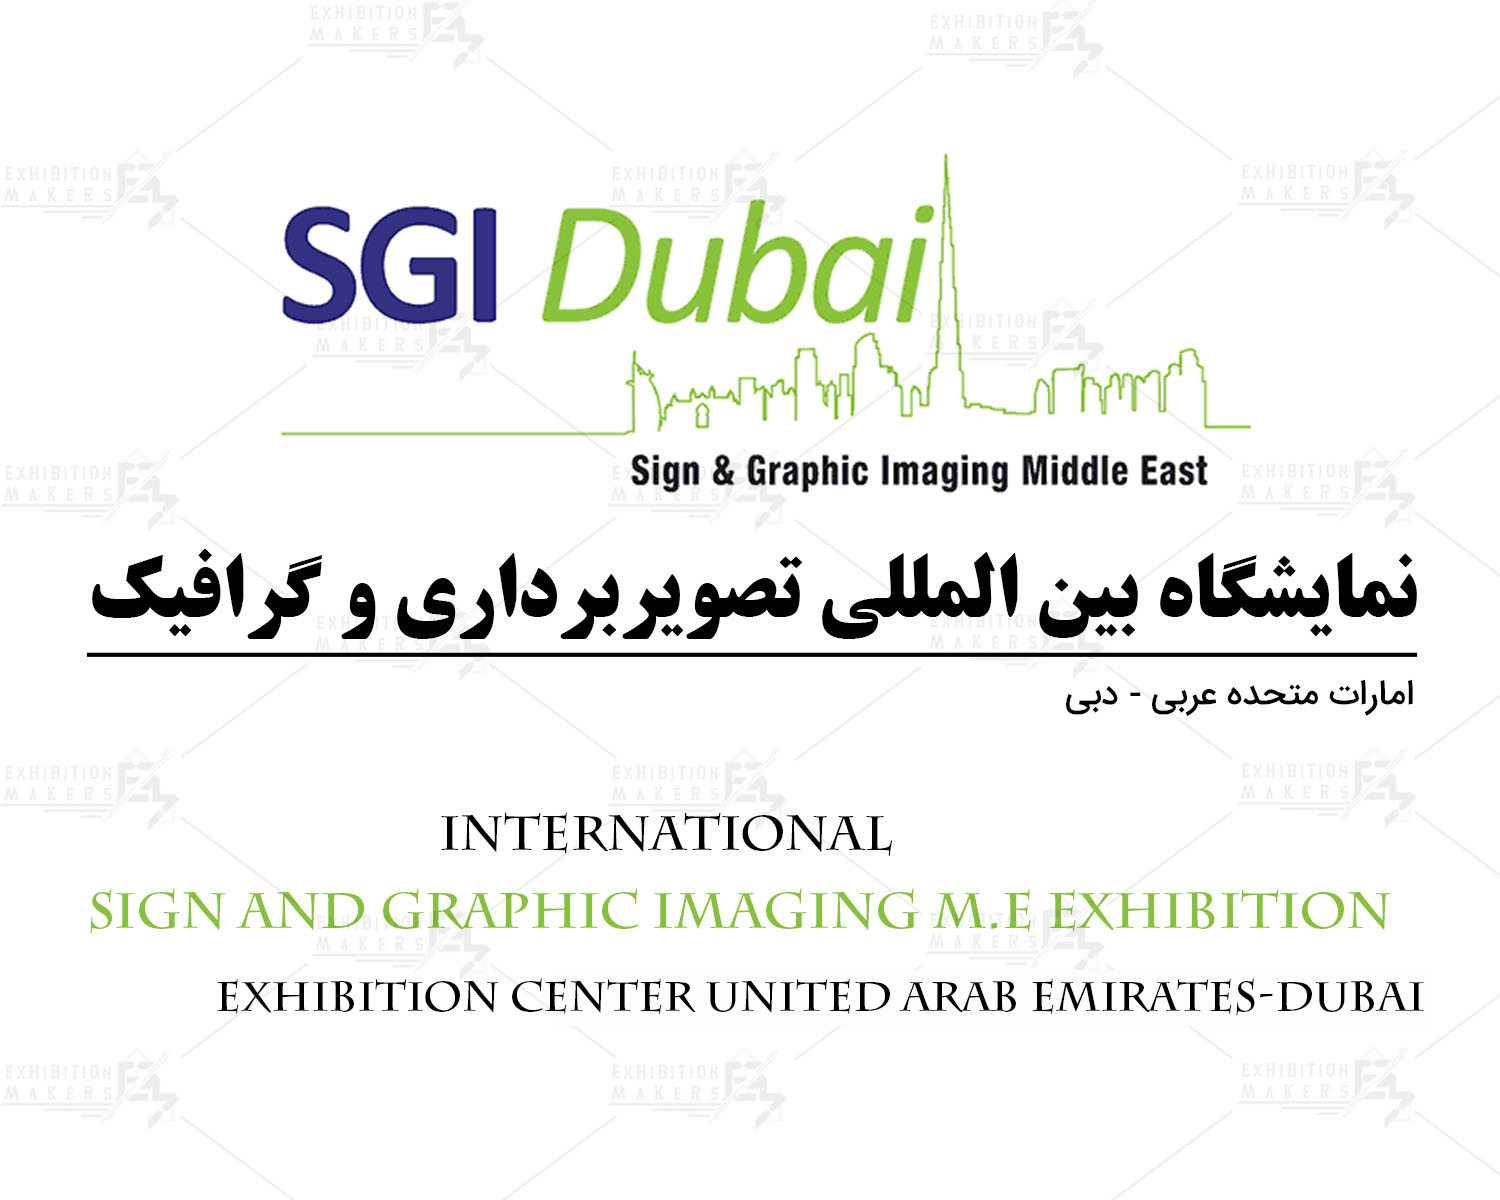 نمایشگاه بین المللی تصویربرداری و گرافیک امارات متحده عربی- دبی